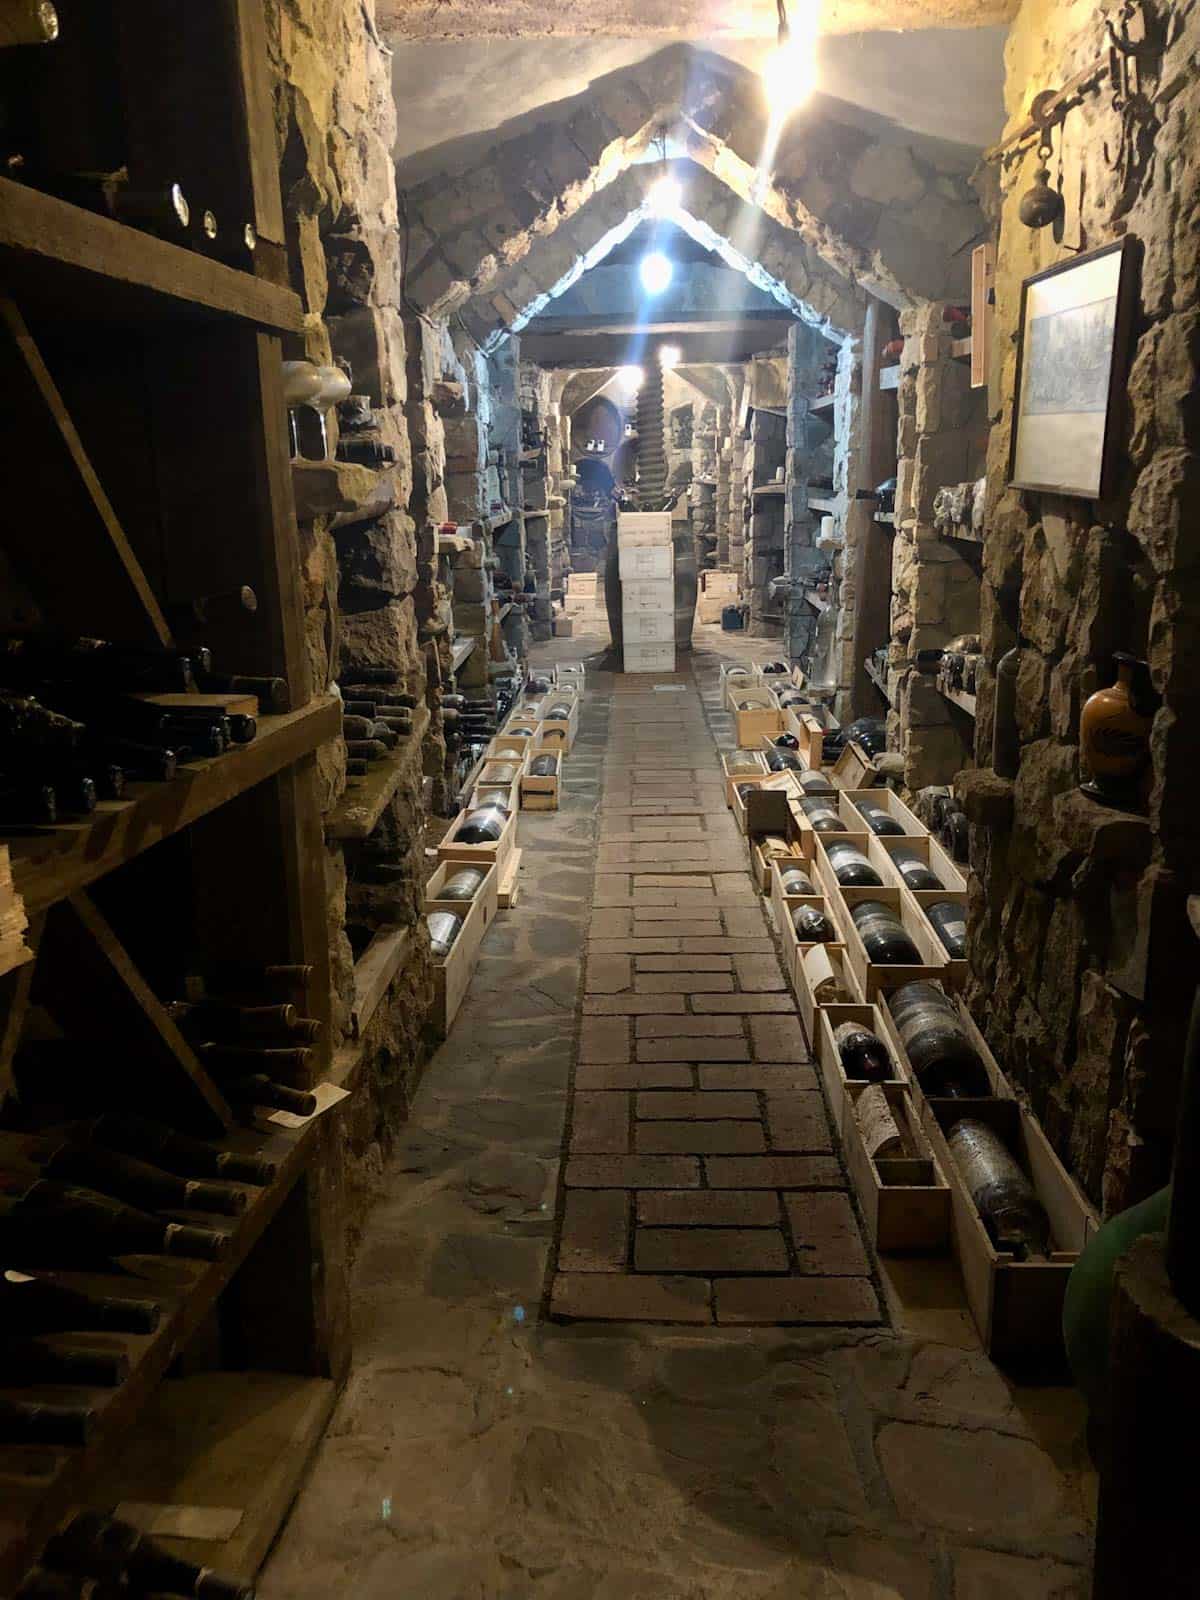 The wine cellar at Quattro Passi.